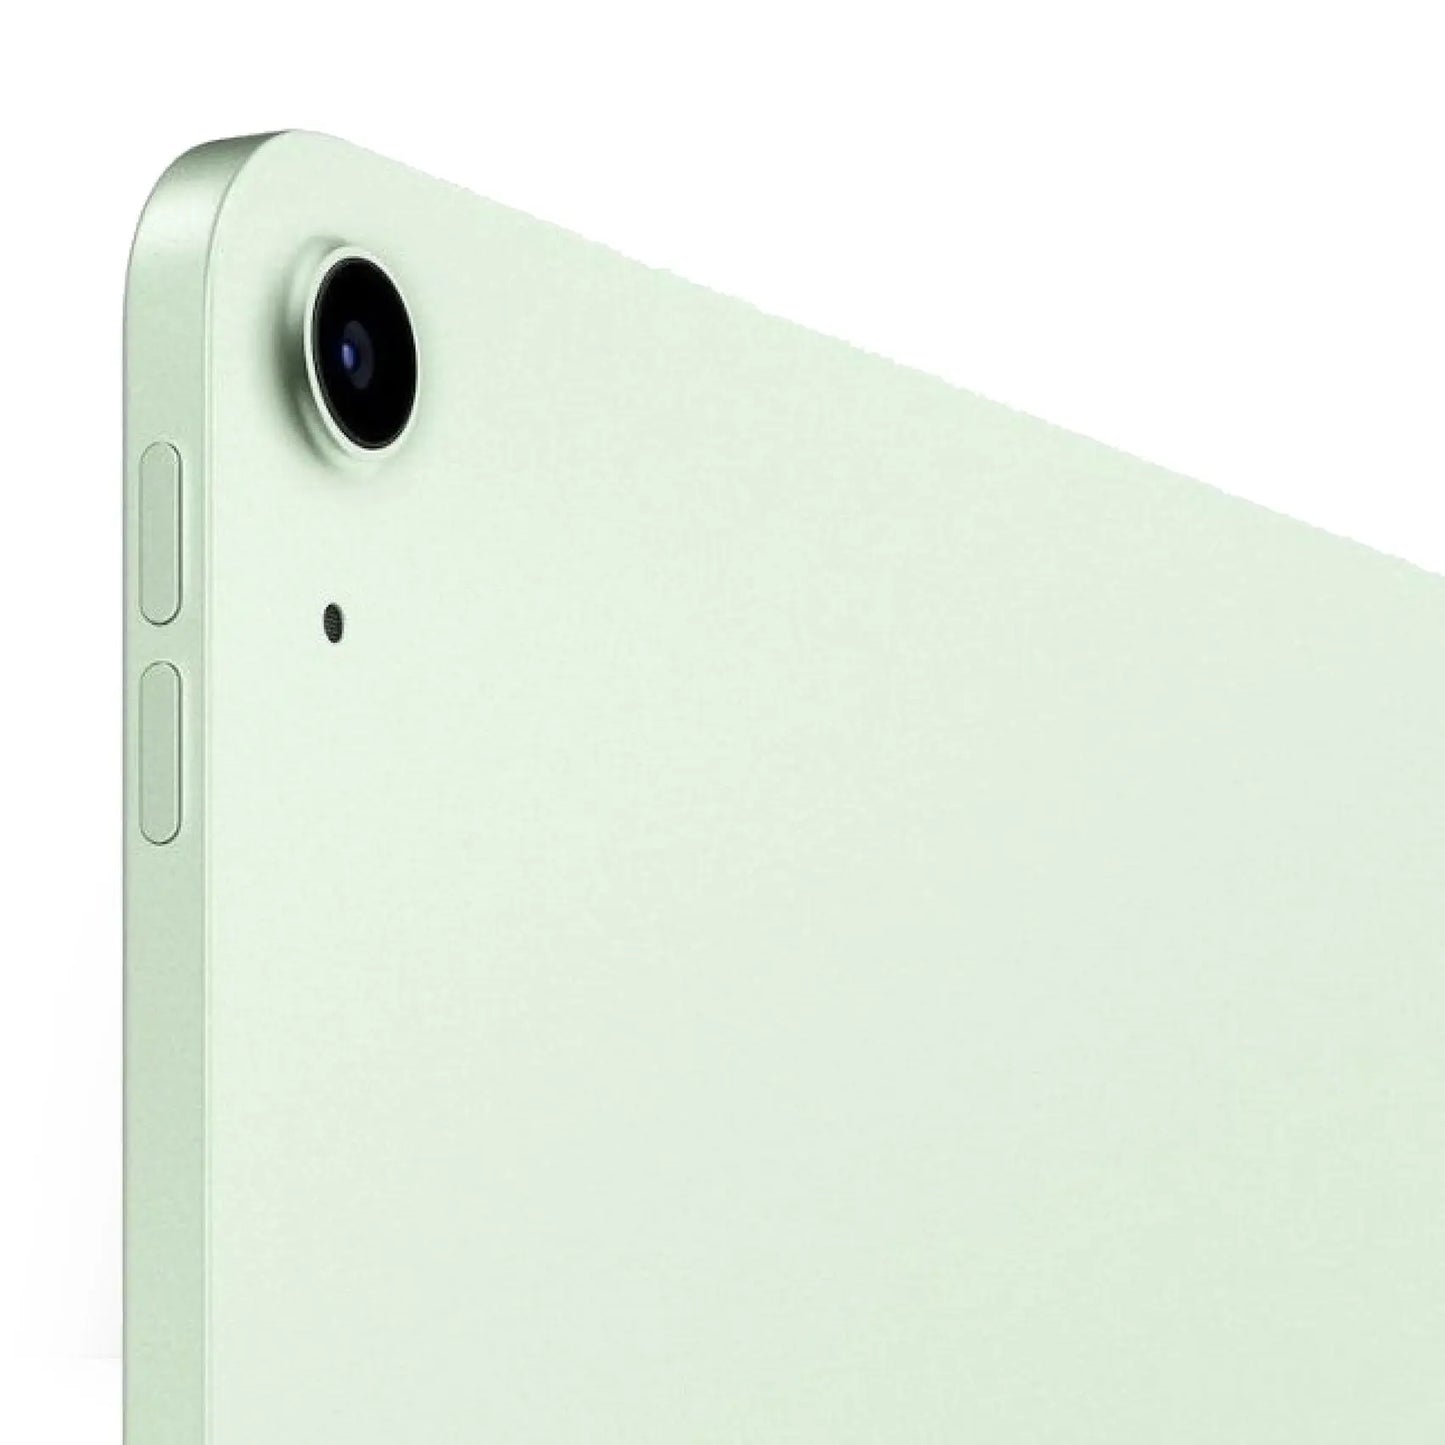 iPad Air 10.9 (2020) 4a generazione - WiFi Senso.it | Boutique Online